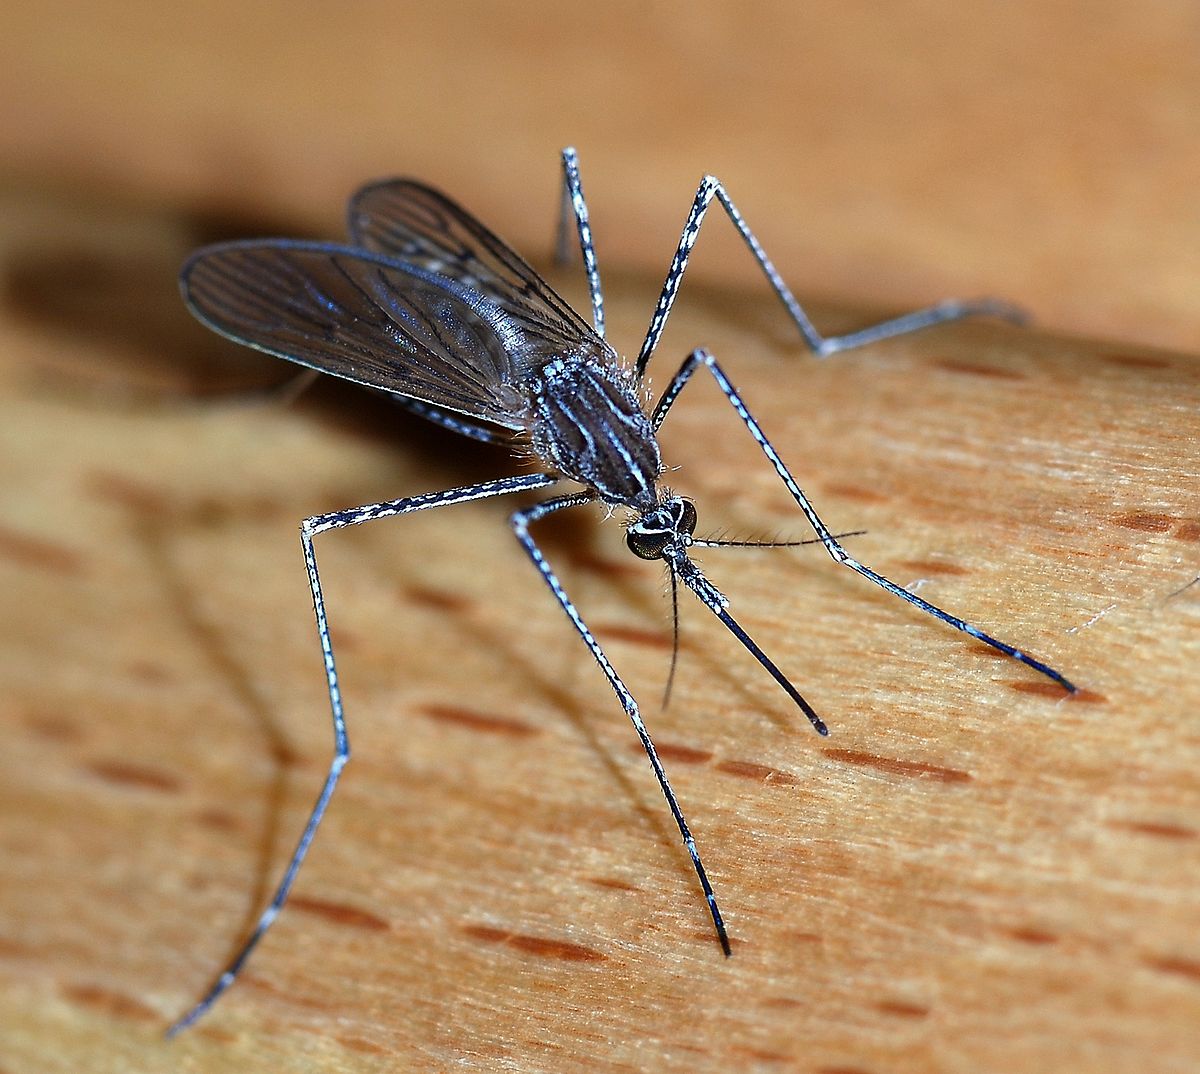 Δείτε με ποιο τρόπο τσιμπάνε τα κουνούπια και τι κάνουν στο δέρμα! (φωτό,βίντεο)